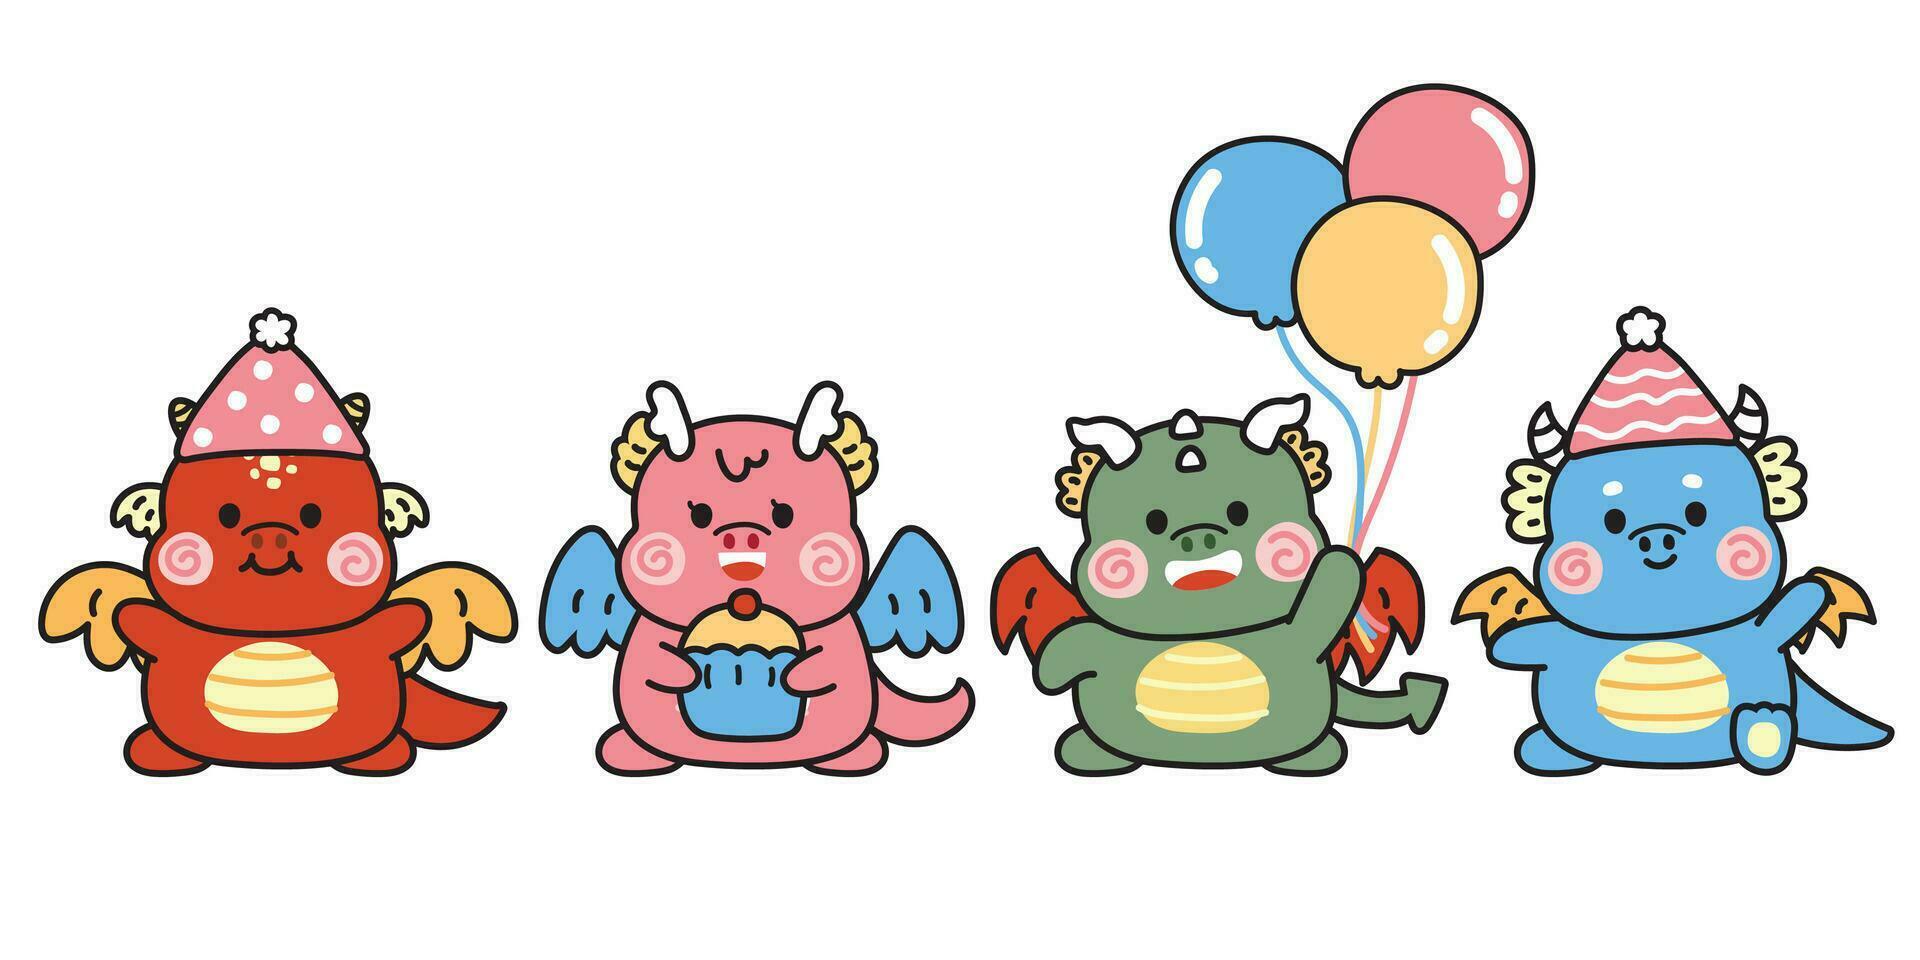 einstellen von süß verschiedene posiert Drachen im Party feiern Konzept.Chinesisch Tier Charakter Karikatur Design Sammlung.kawaii.vektor.illustation. vektor